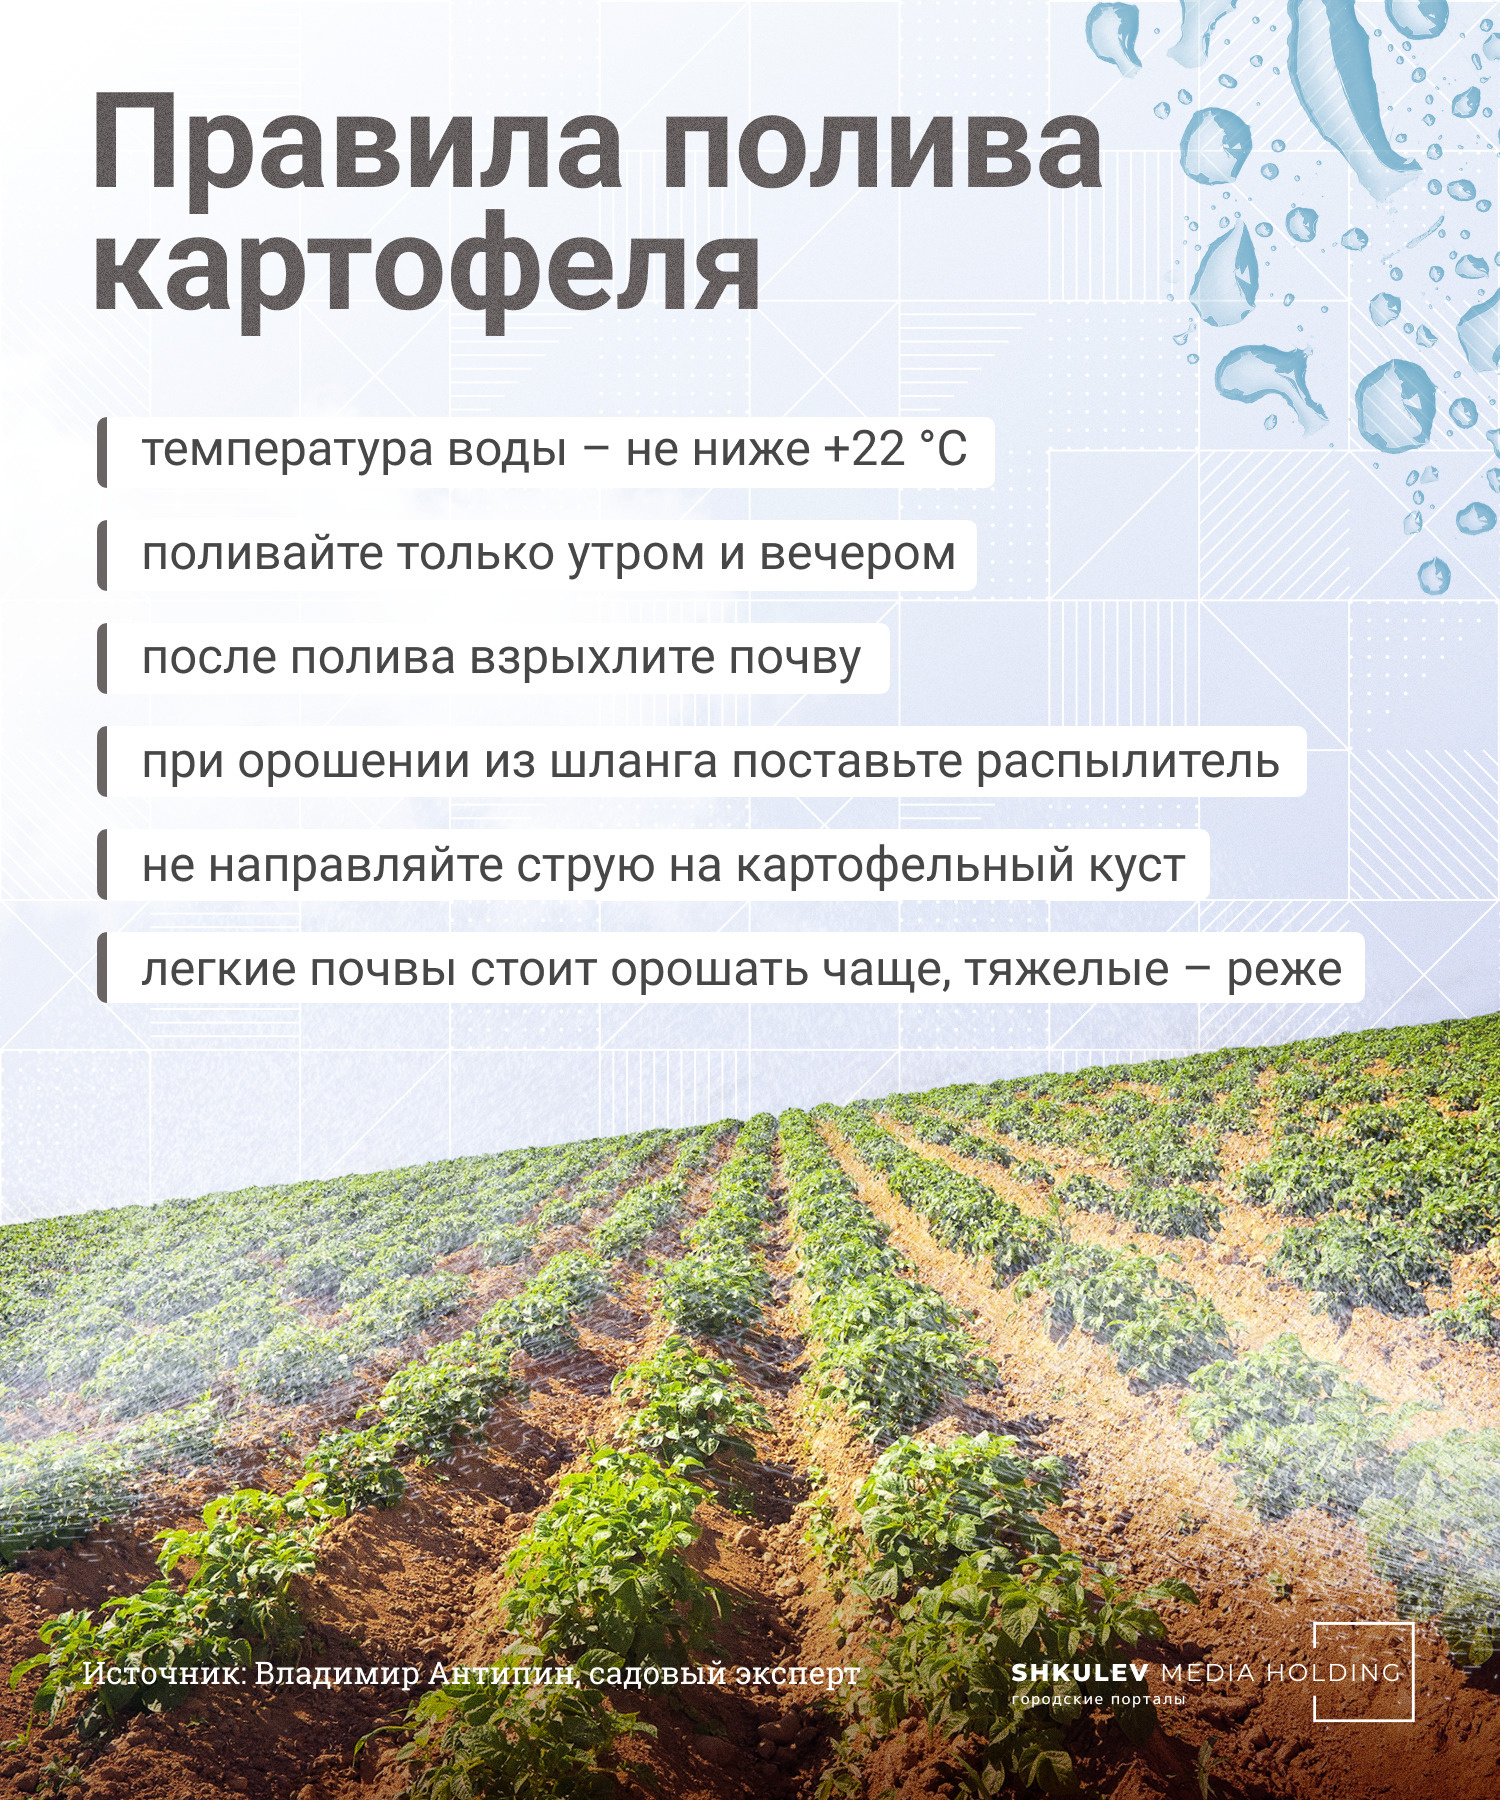 Главные правила полива картошки: когда и как часто поливать грядки дляхорошего урожая - 12 июня 2022 - Фонтанка.Ру